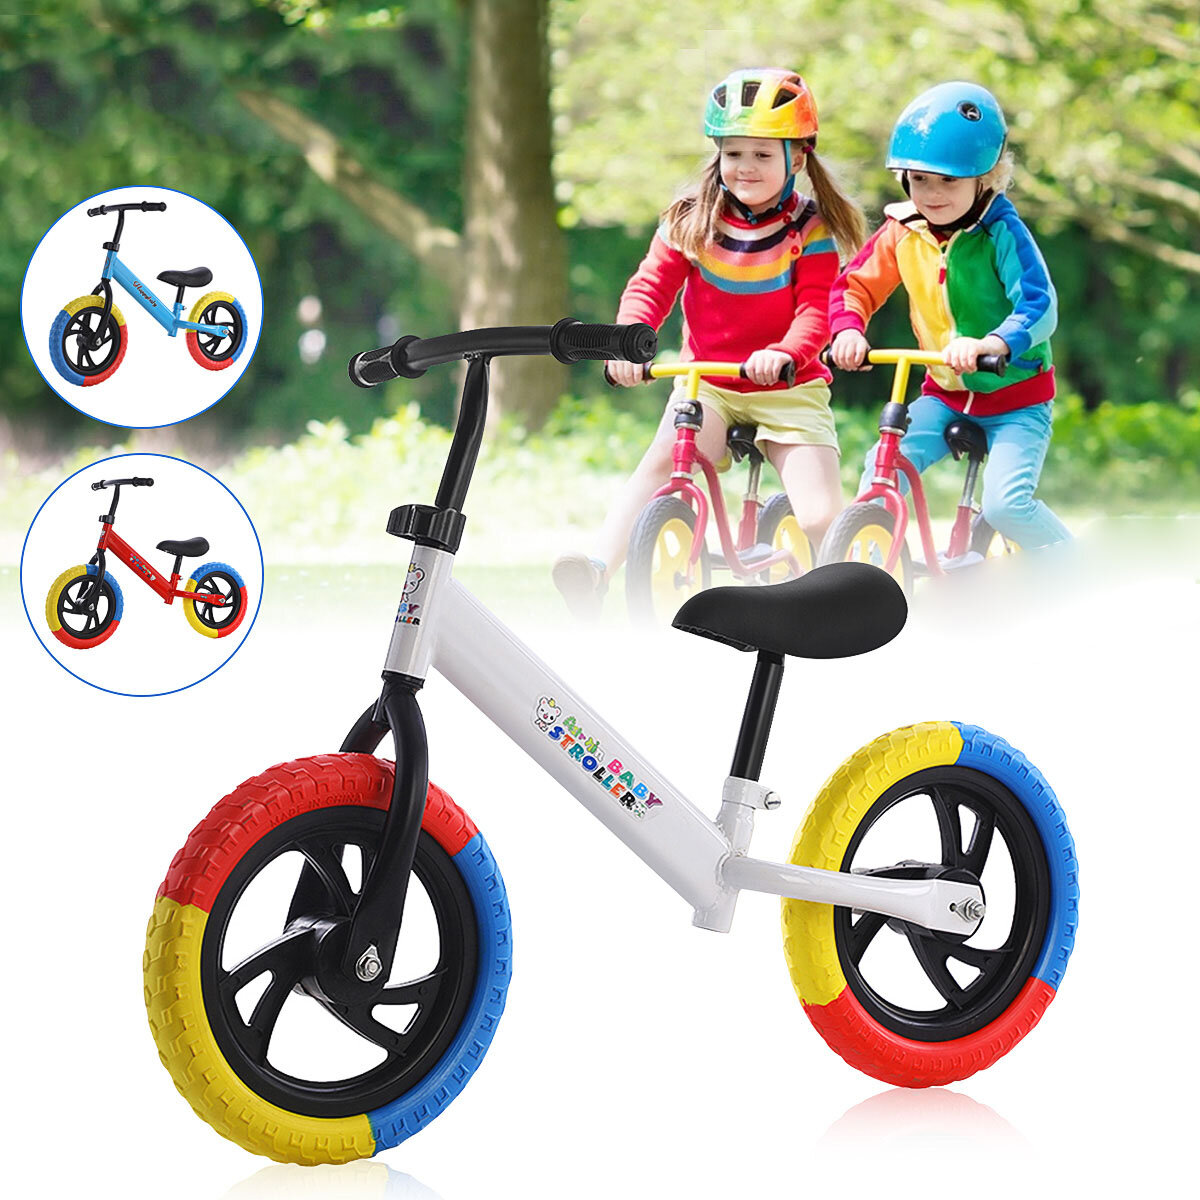 

12 Детский балансировочный велосипед, регулируемый самокат без педали для малышей, езда и ходьба для 2-7 лет